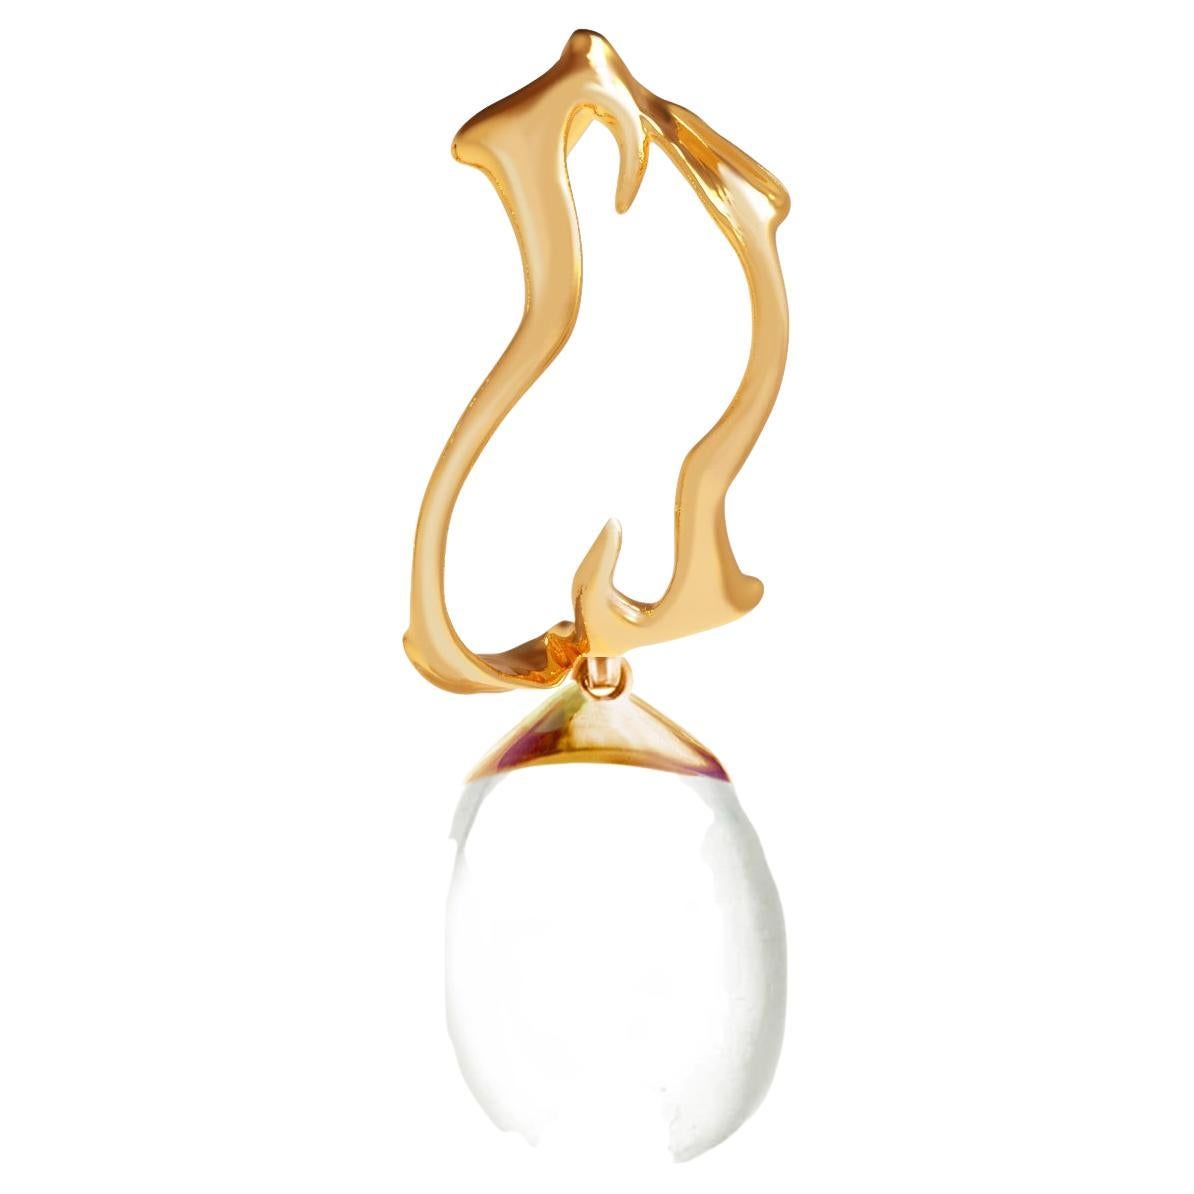 Ce collier pendentif contemporain en forme de goutte est en or jaune 18 carats avec une goutte de quartz détachable. L'or de la plus haute qualité présente une surface liquide et étincelante qui met parfaitement en valeur les bijoux. Le Making Works